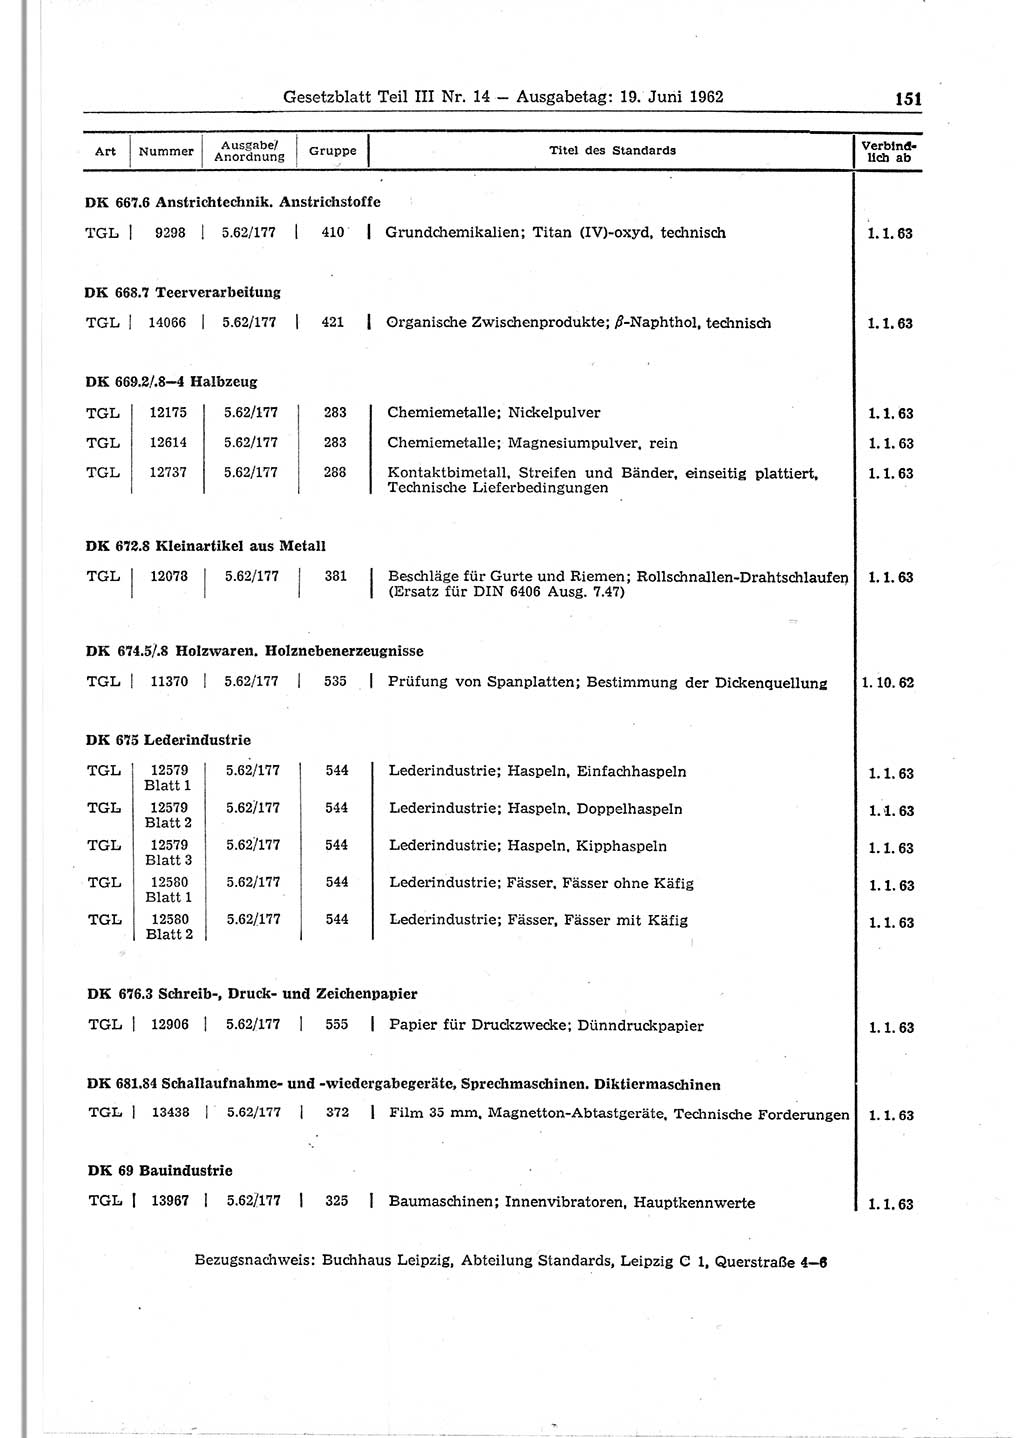 Gesetzblatt (GBl.) der Deutschen Demokratischen Republik (DDR) Teil ⅠⅠⅠ 1962, Seite 151 (GBl. DDR ⅠⅠⅠ 1962, S. 151)